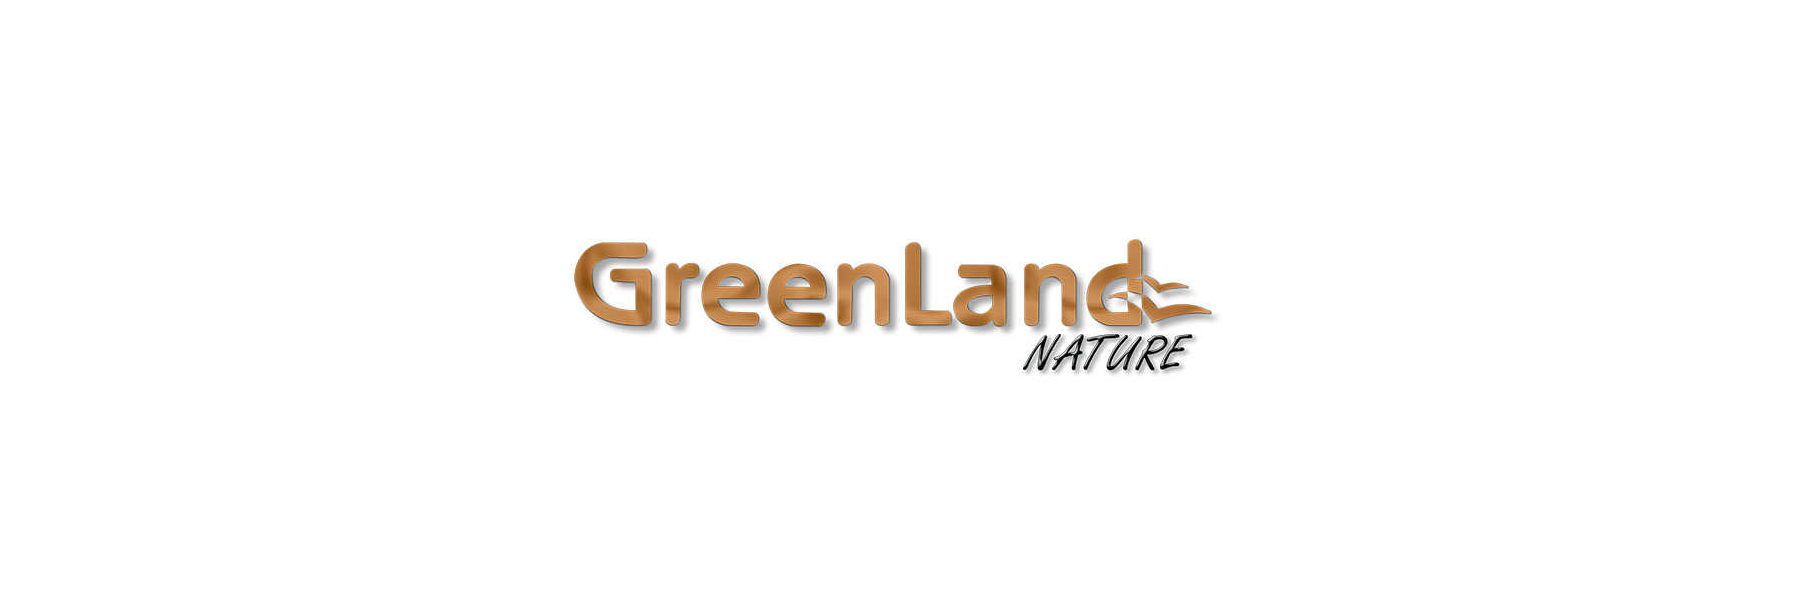 Greenland Nature natürlich - Gel Geldboerse Lederwaren gegerbt Online